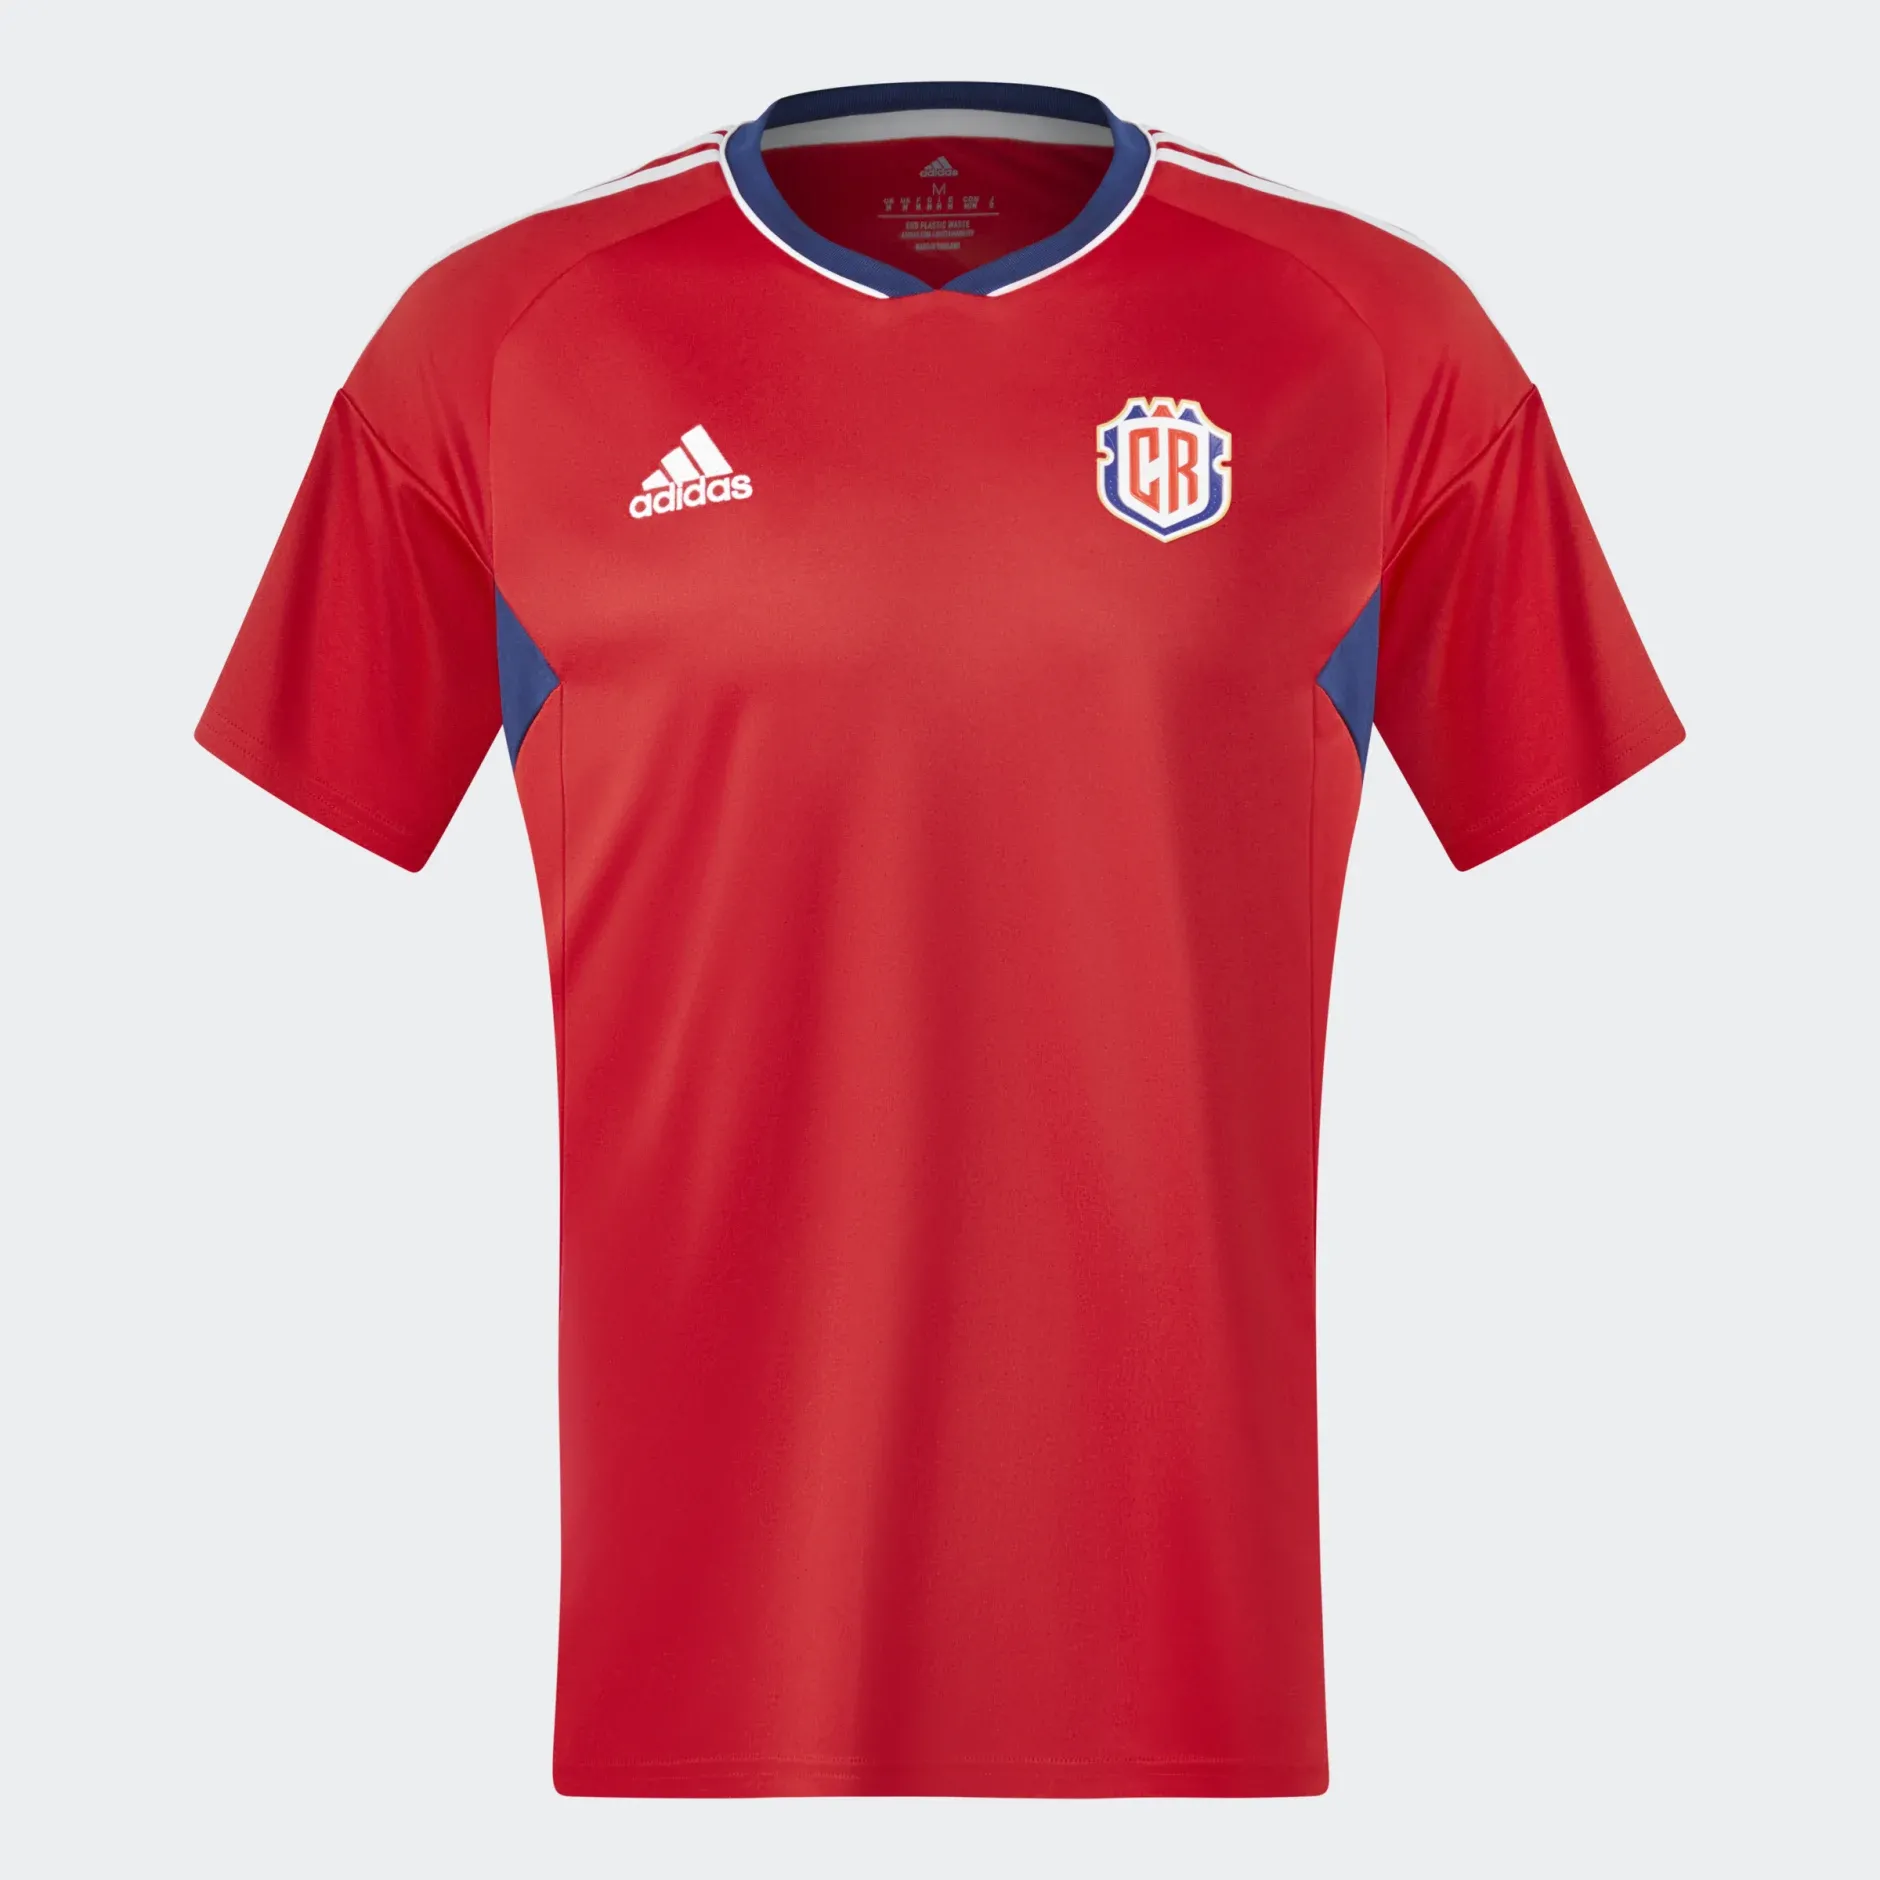 La camiseta de local que Adidas diseñó para Costa Rica tiene al rojo intenso como protagonista. Además. resaltan detalles en azul en axilas y cuello, mientras que los tres ribetes de la marca son blancos.